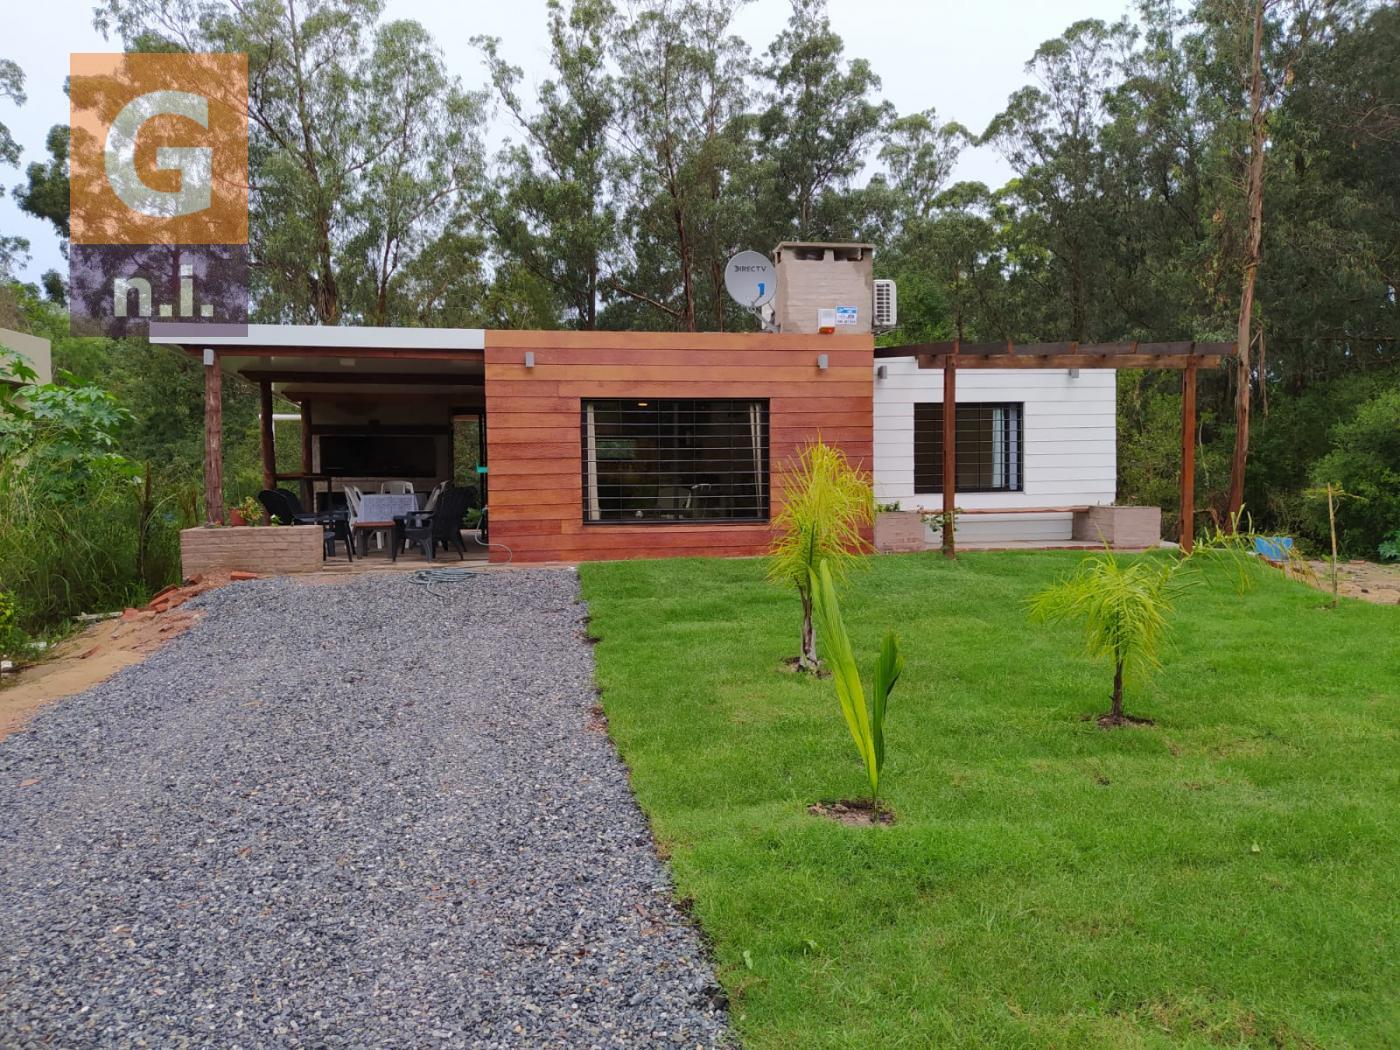 Casa en Piriápolis (Punta Colorada) - Ref.4546